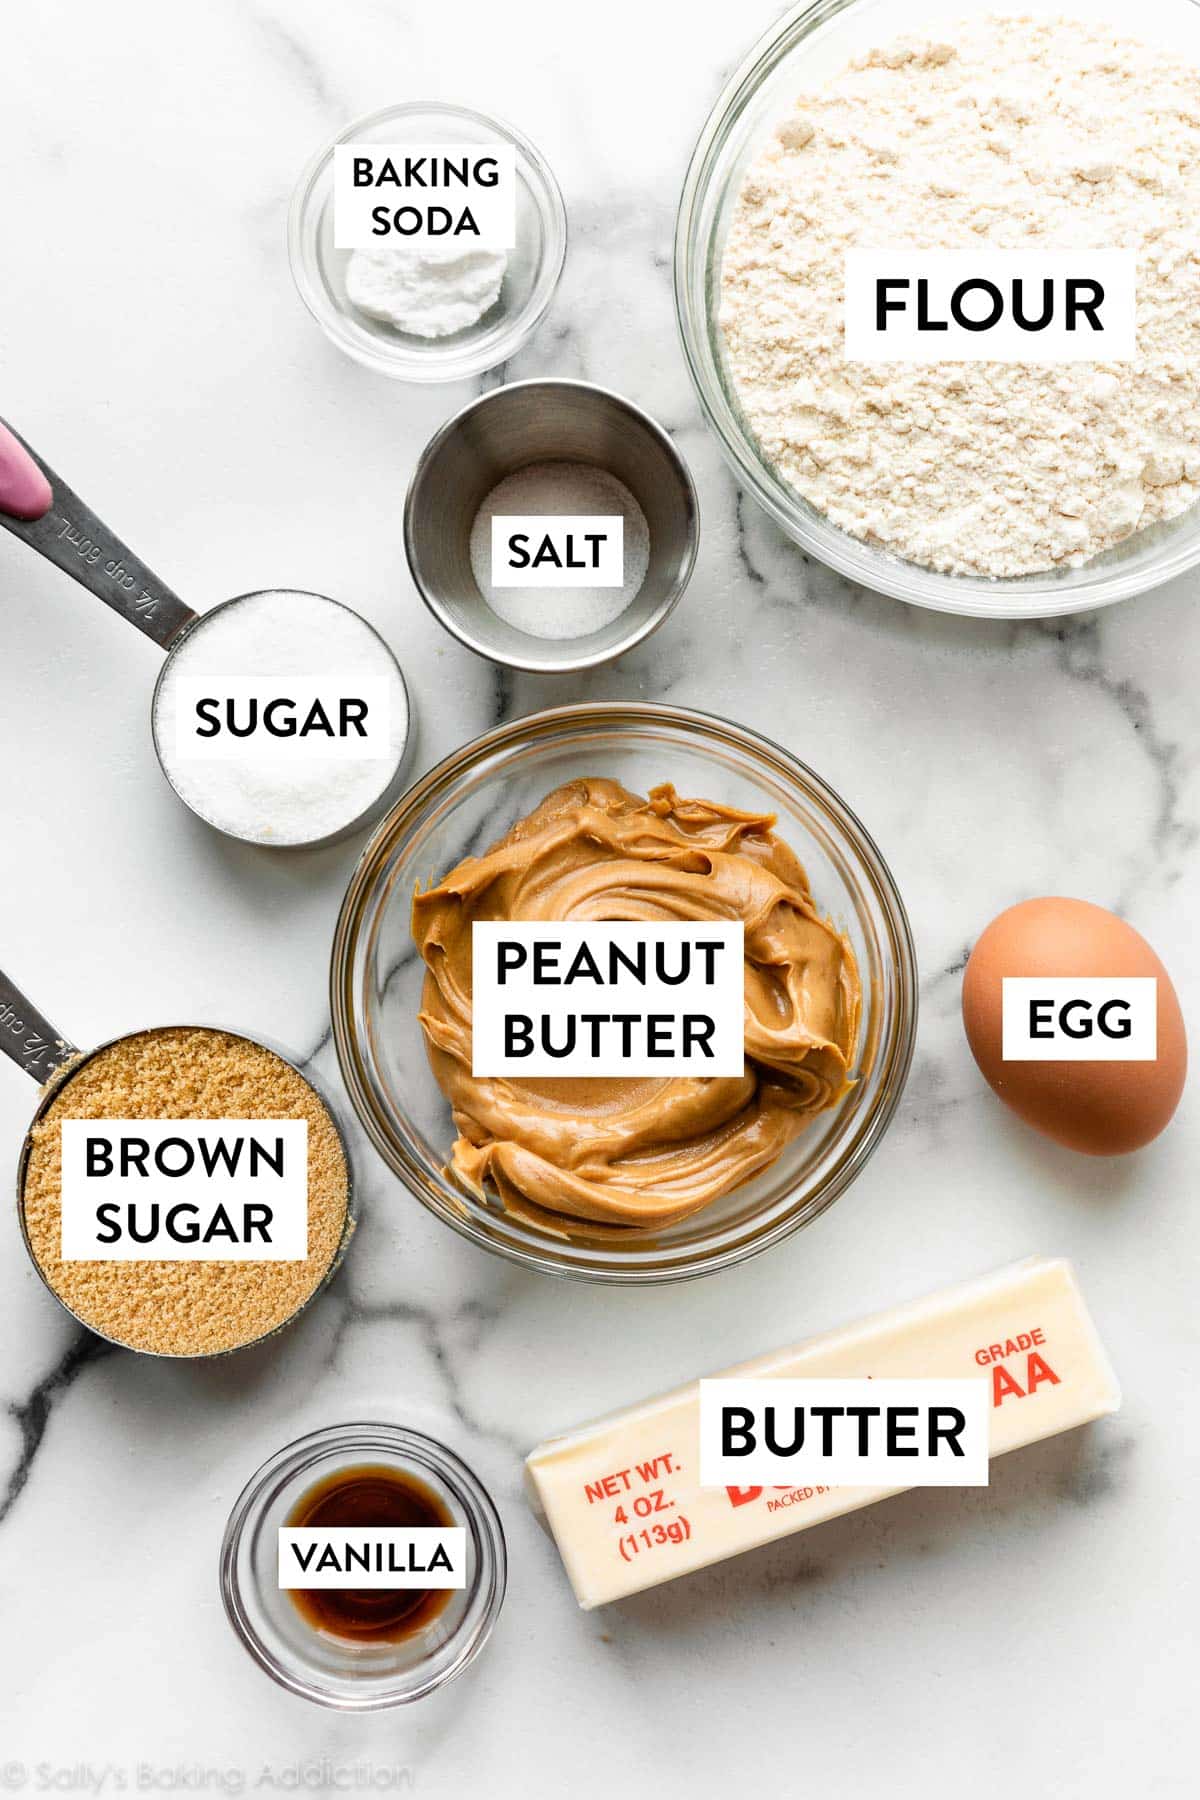 vanille, œuf, farine, beurre, cassonade et autres ingrédients sur le comptoir en marbre